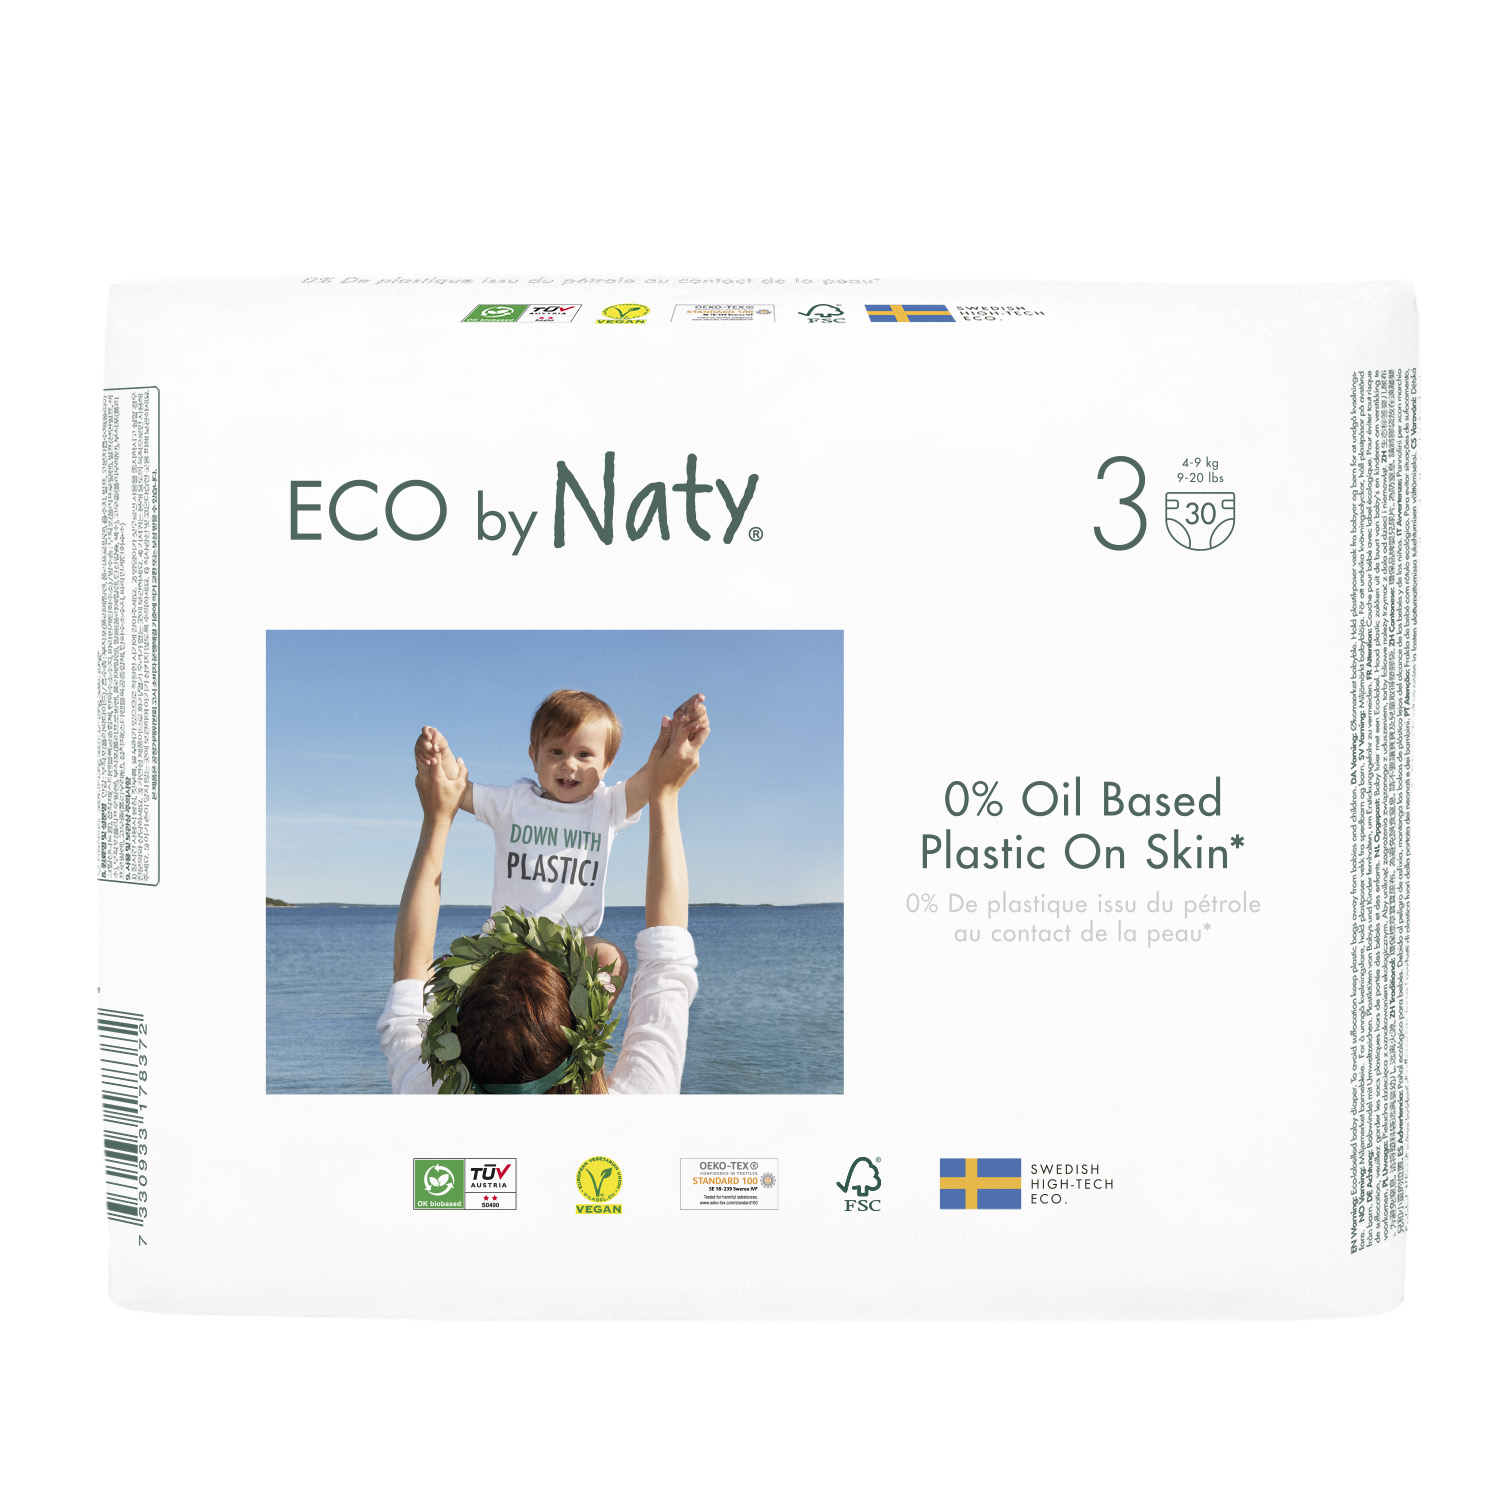 scutece-eco-naty